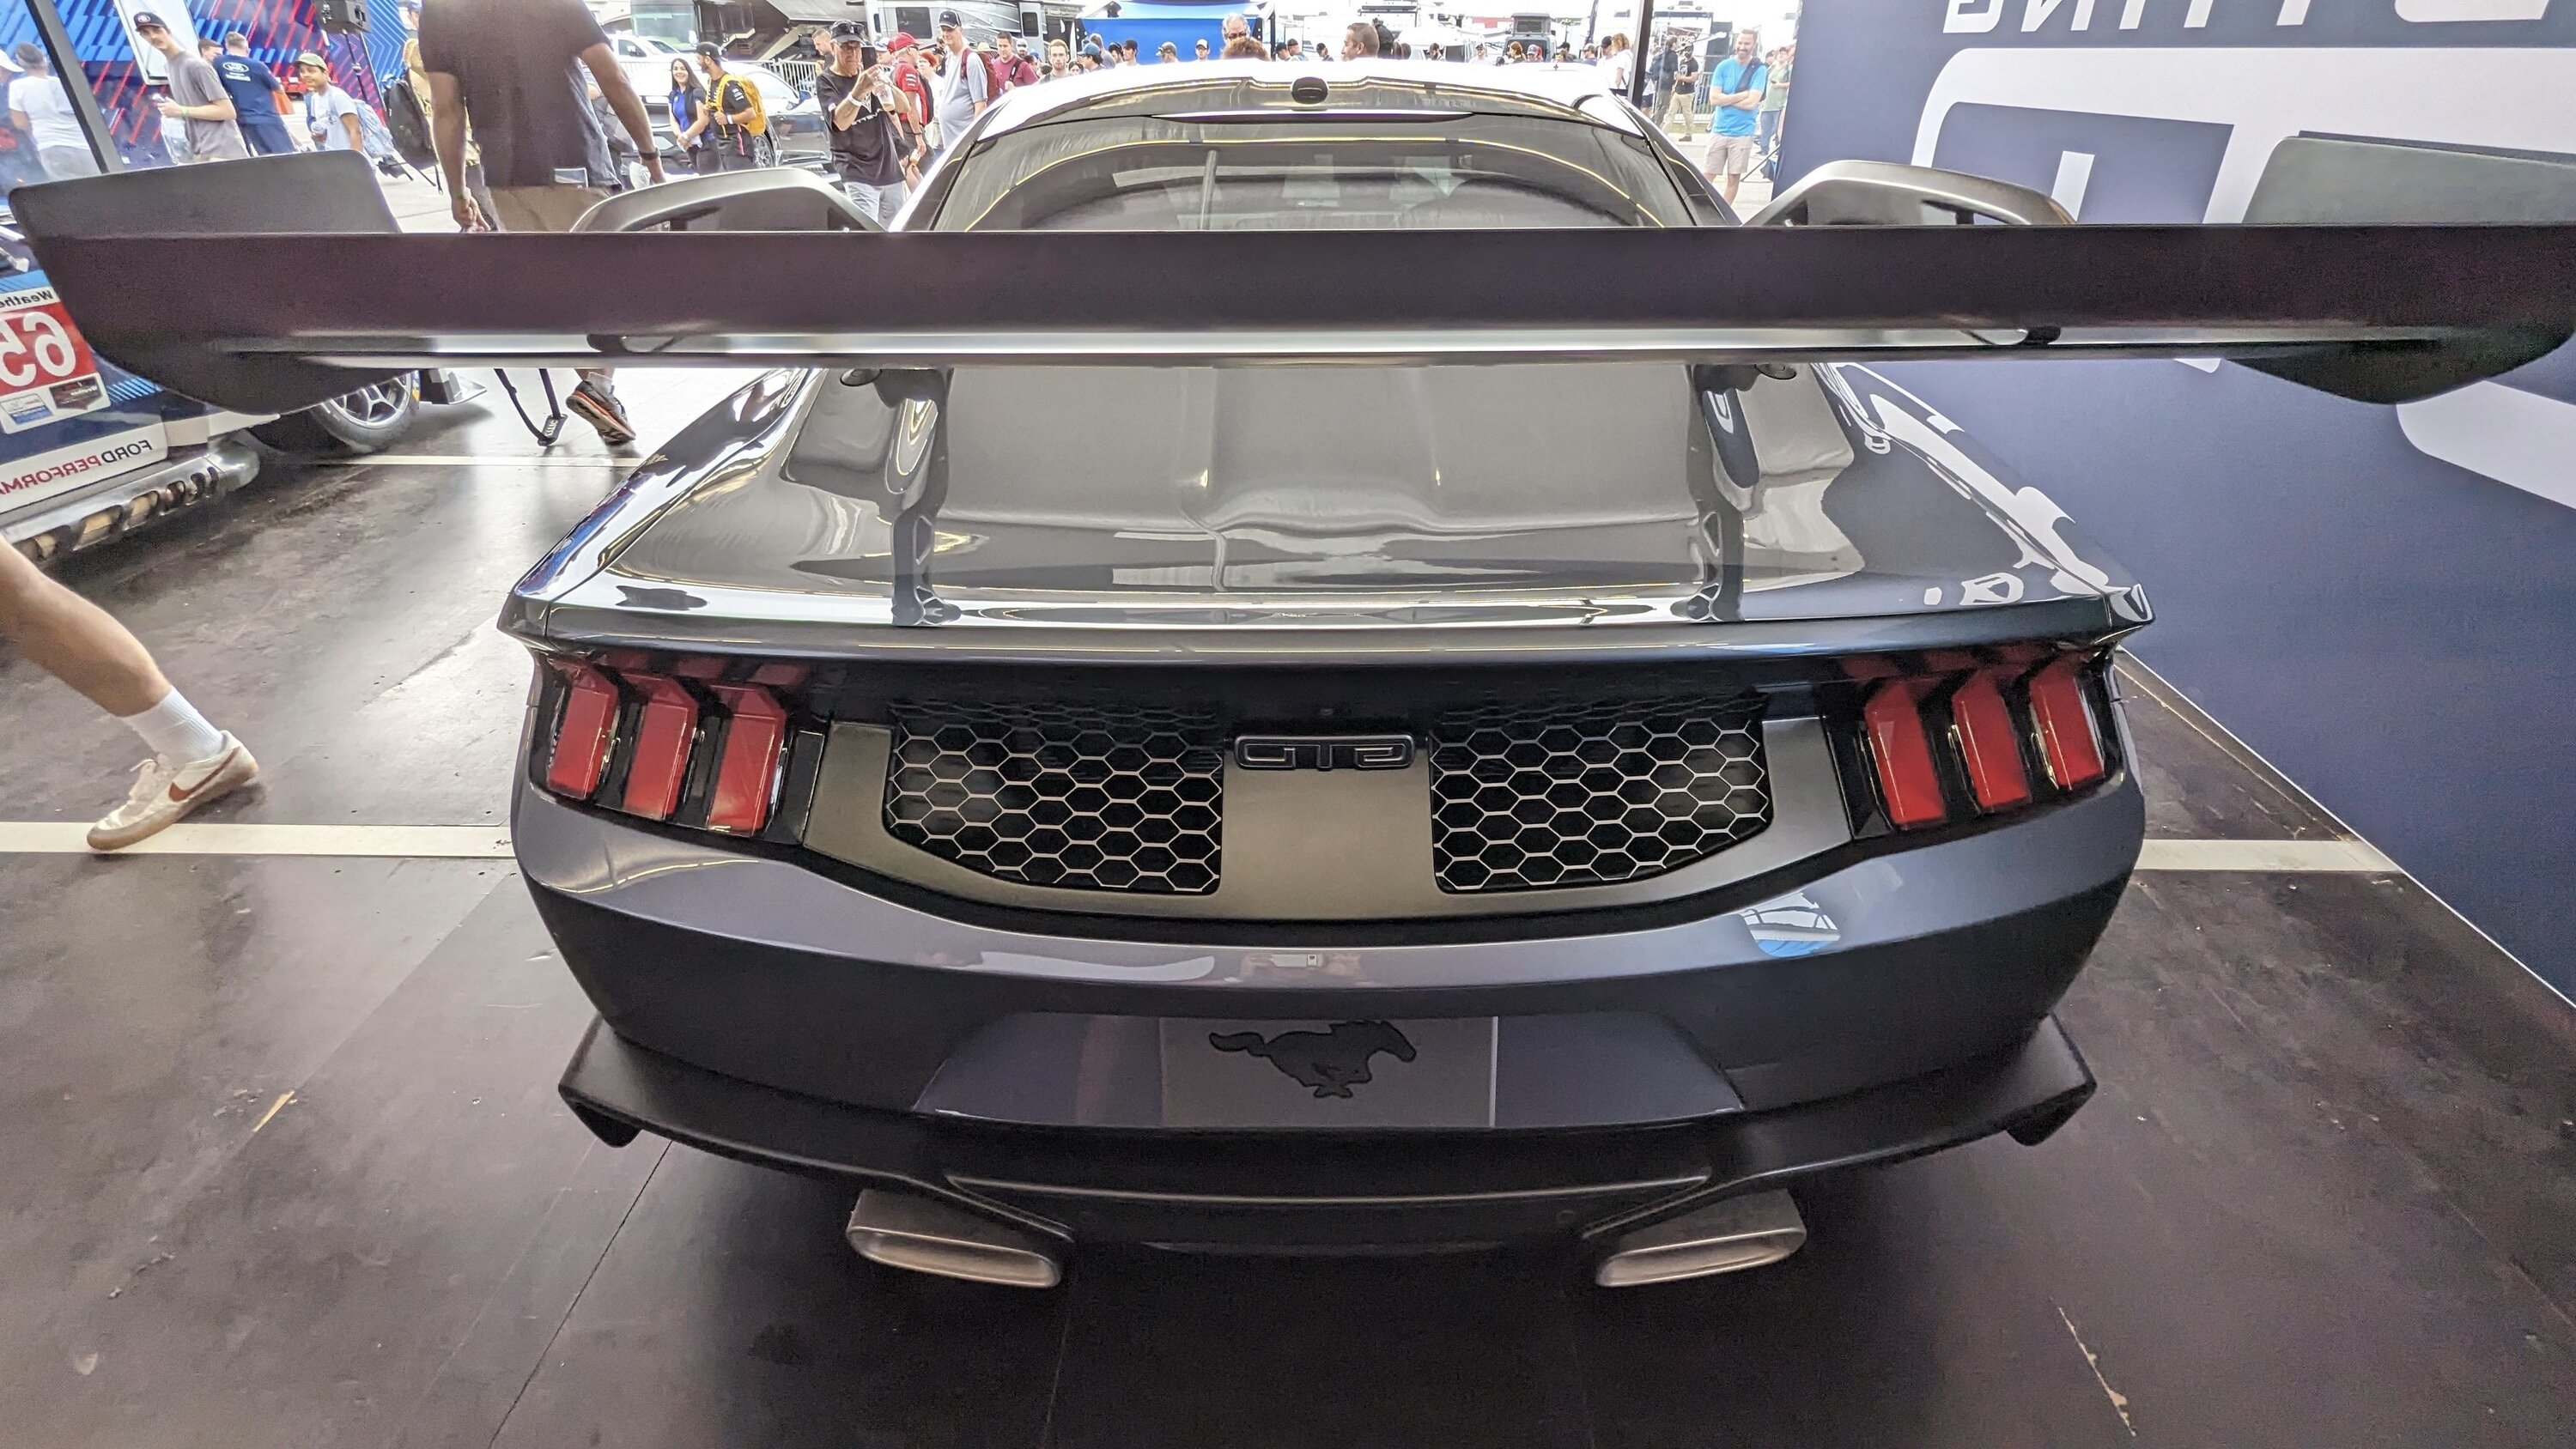 S650 Mustang 2025 Mustang GTD at Daytona Speedway IMG_0970